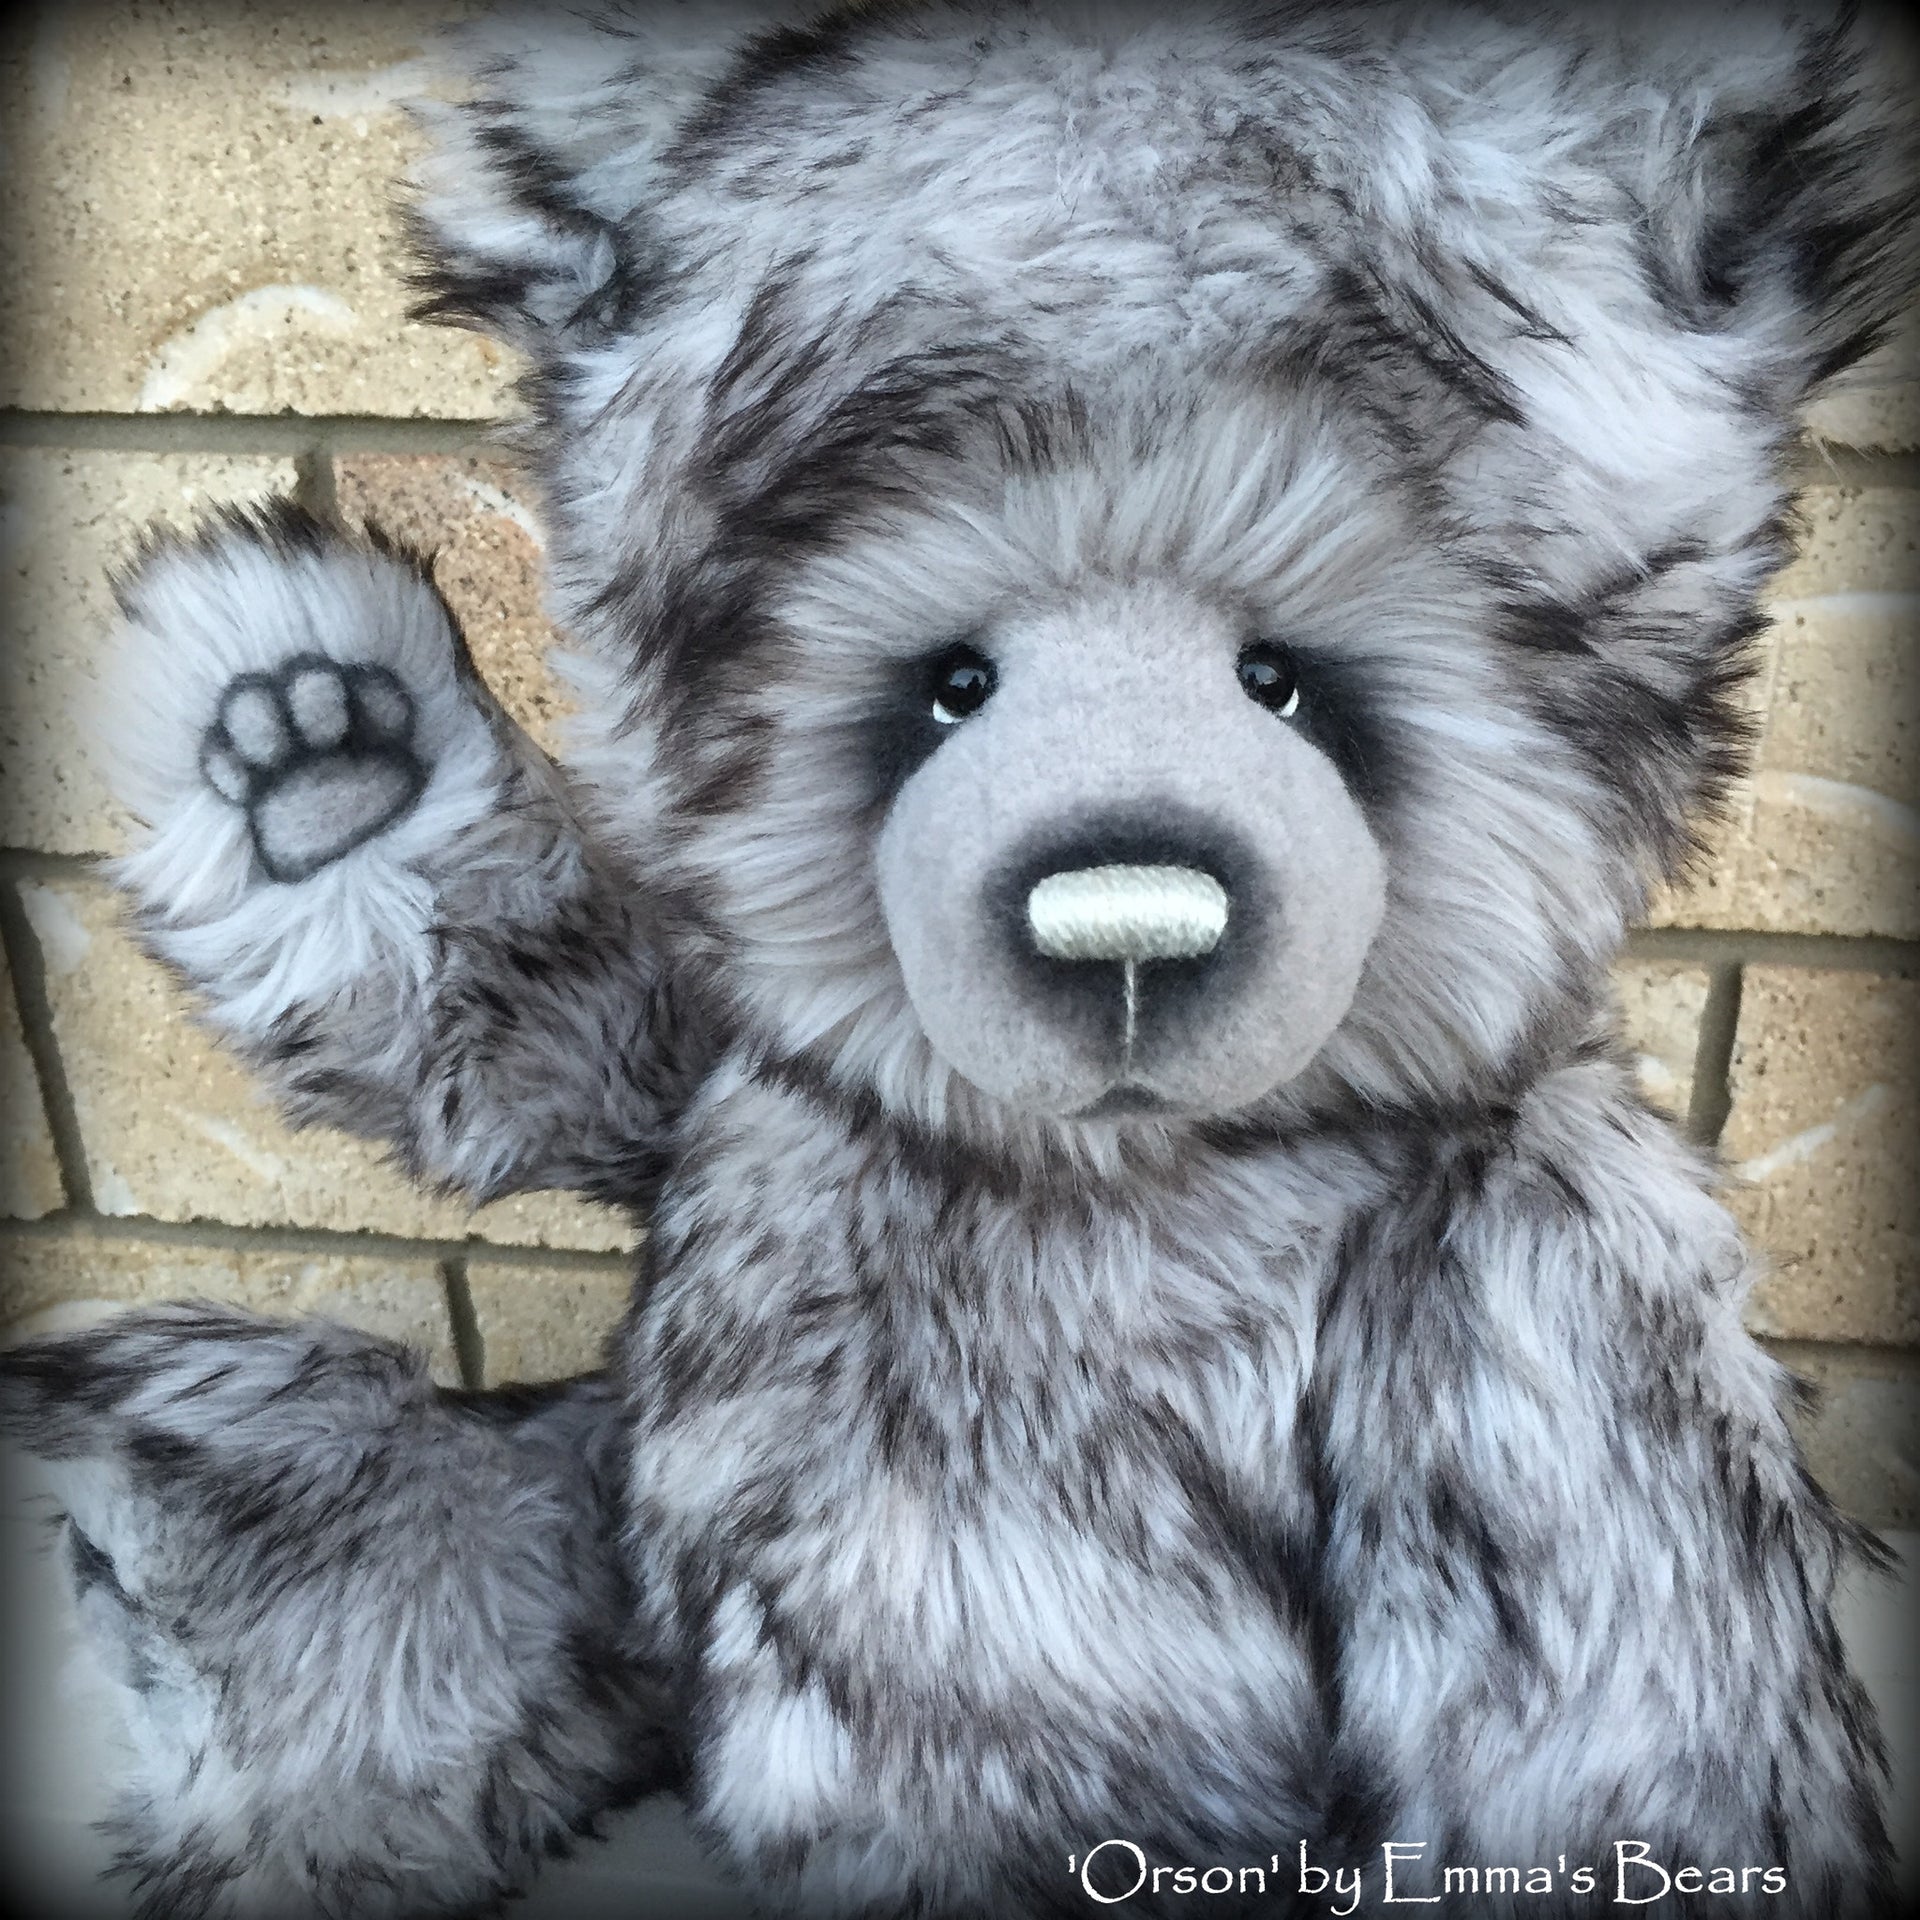 Orson - 18in Faux Fur Artist Bear by Emmas Bears - OOAK